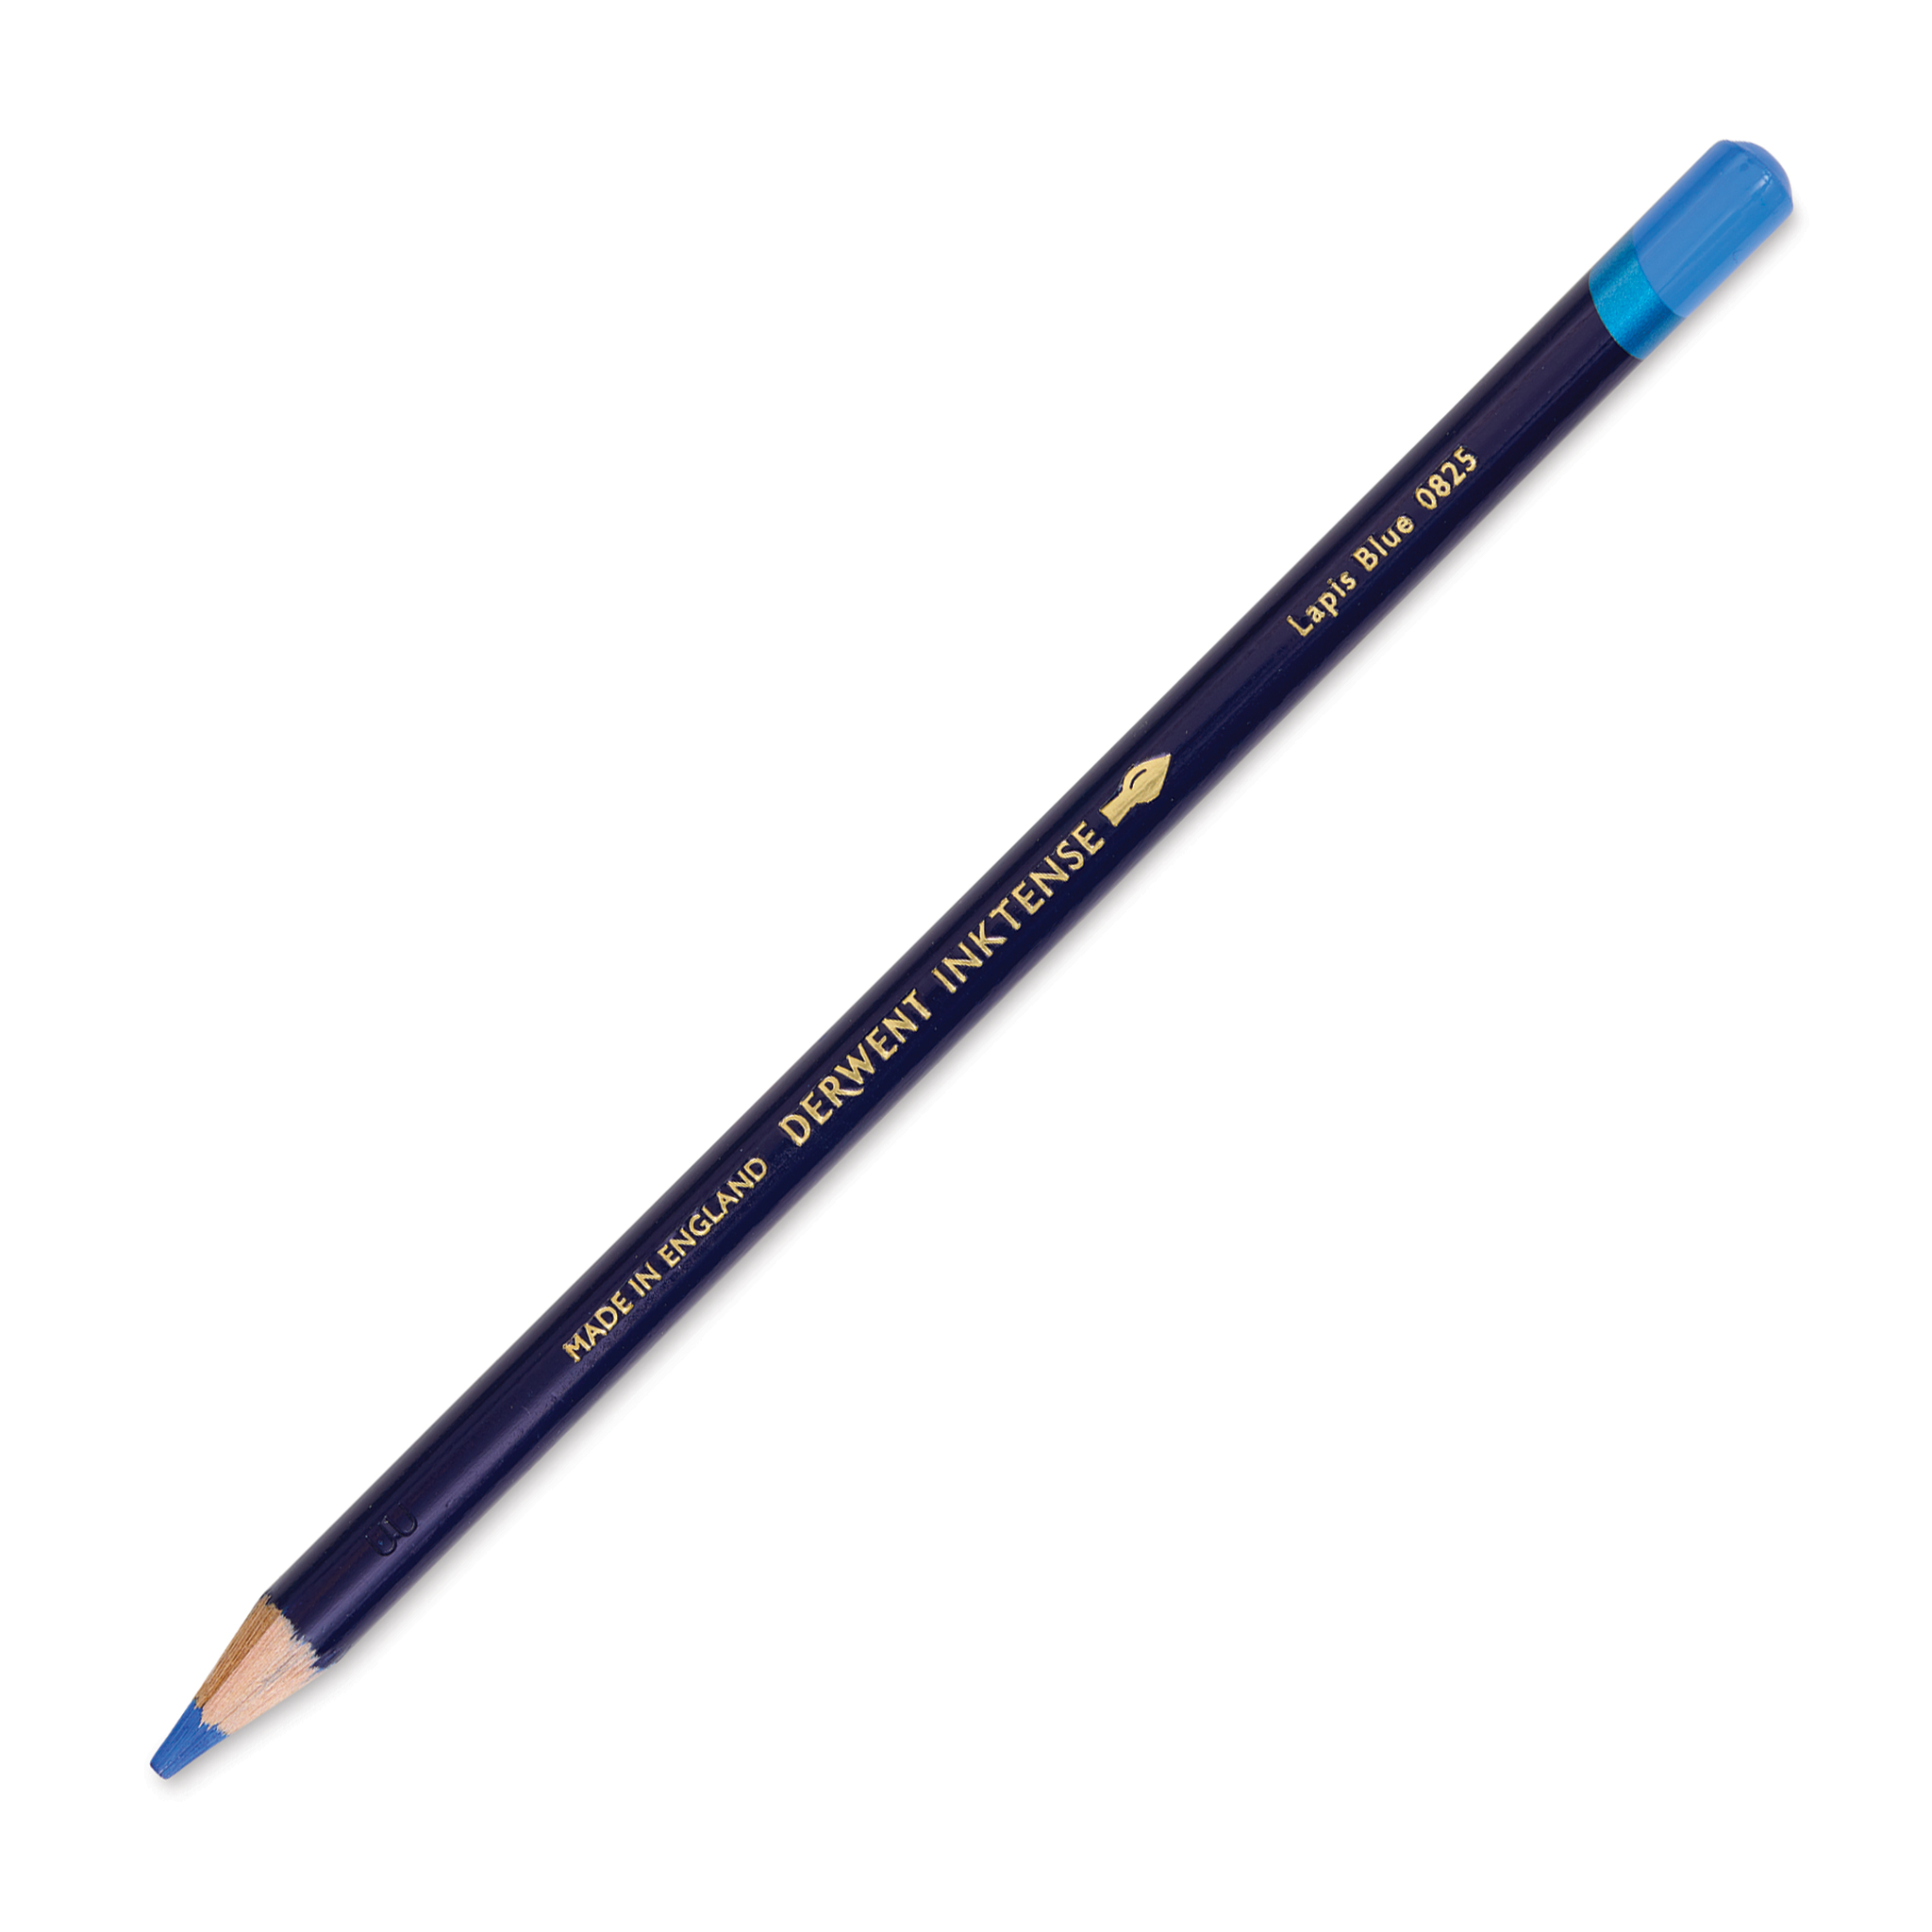 Derwent Inktense Pencil - Deep Blue